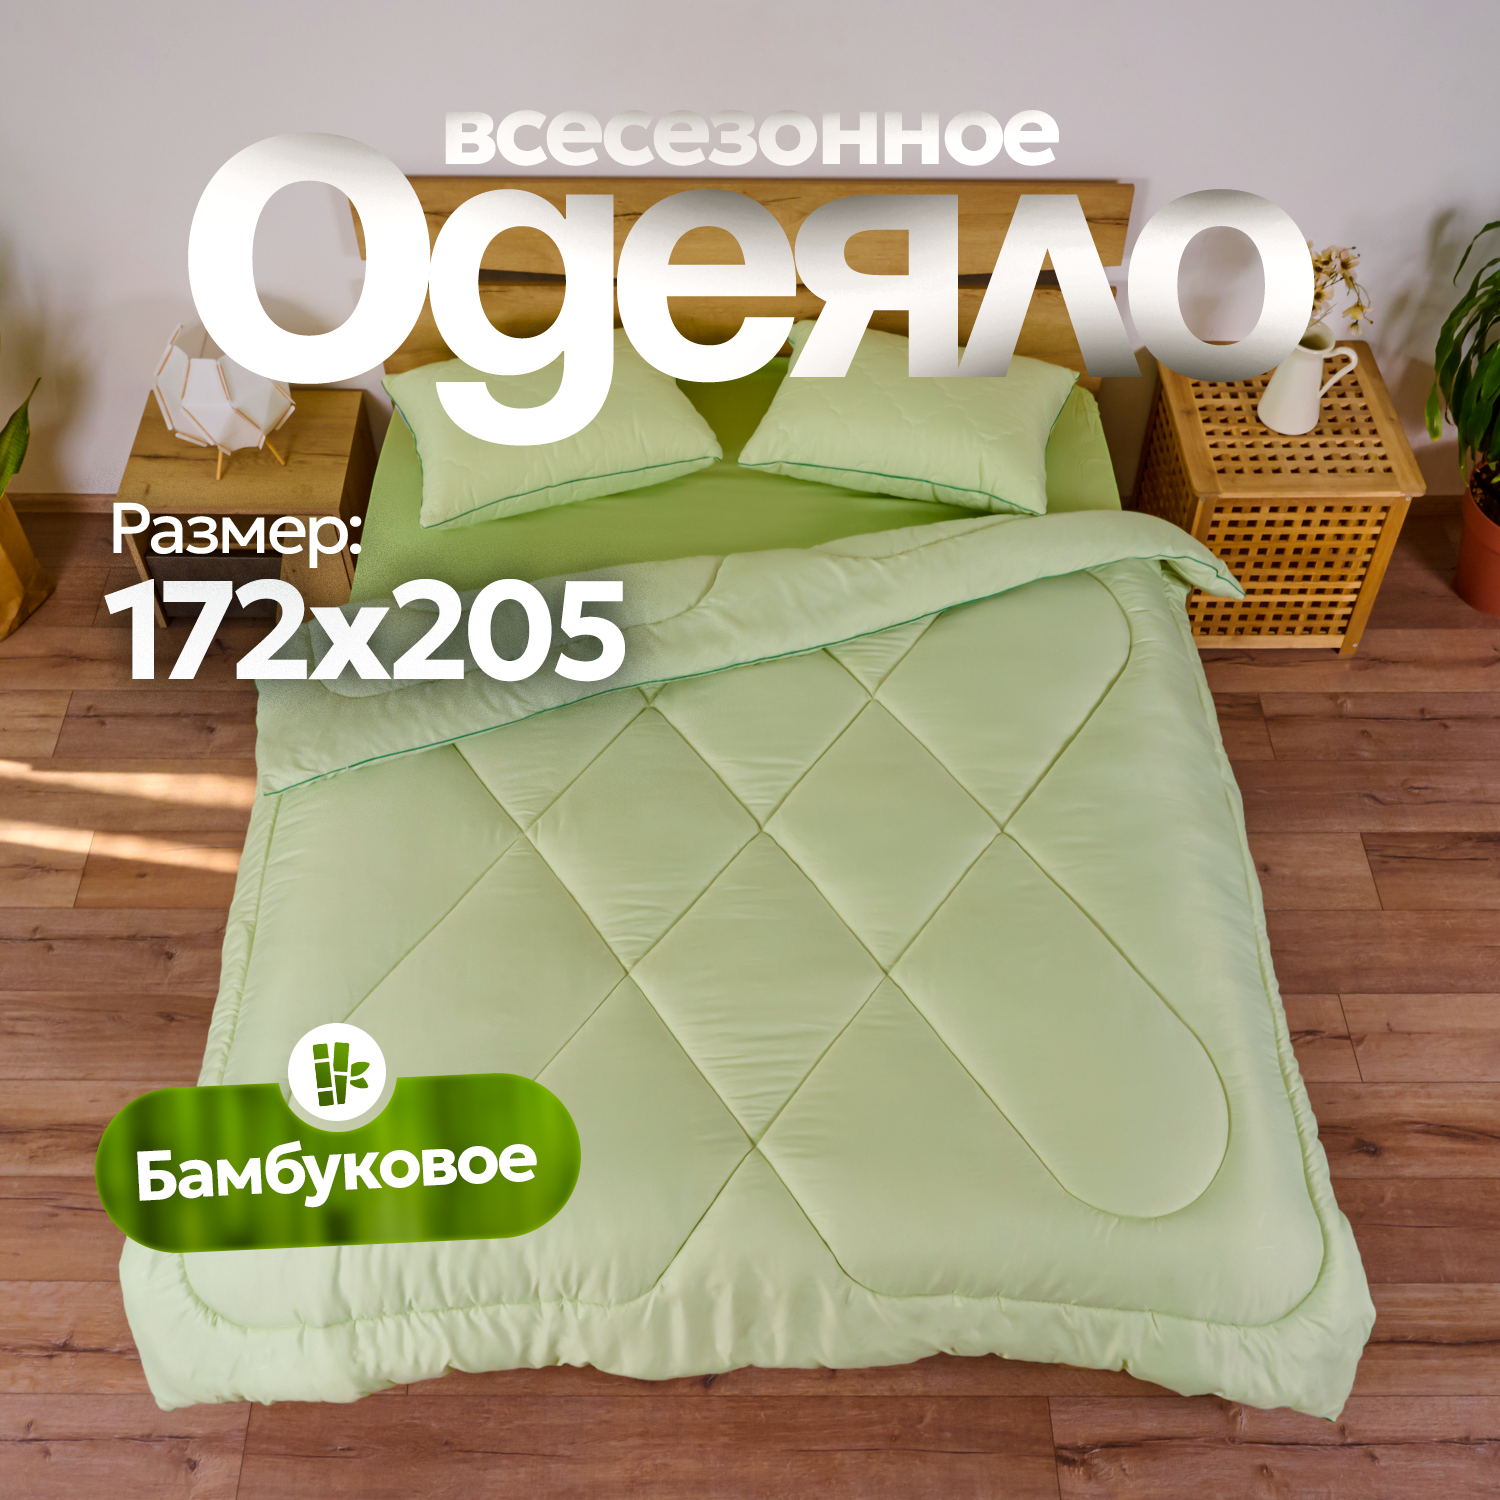 Одеяло из бамбукового волокна Микрофибра-Бамбук 2 спальное, 172х205, теплое